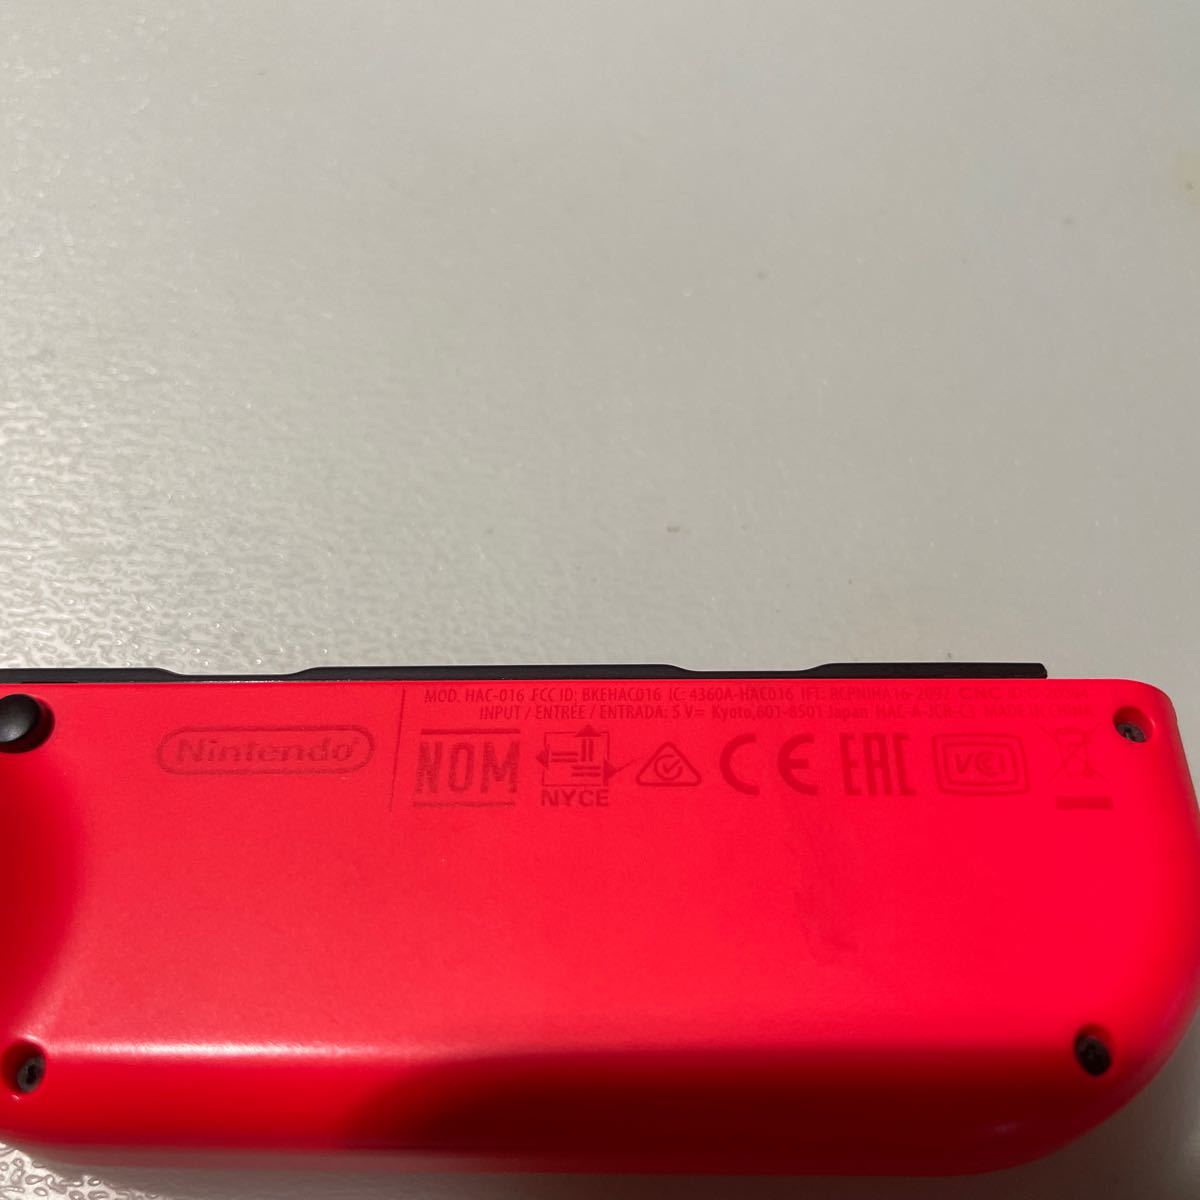 ジョイコン ニンテンドースイッチ Nintendo Switch Joy-Con(R) ネオンレッド 右　動作未確認